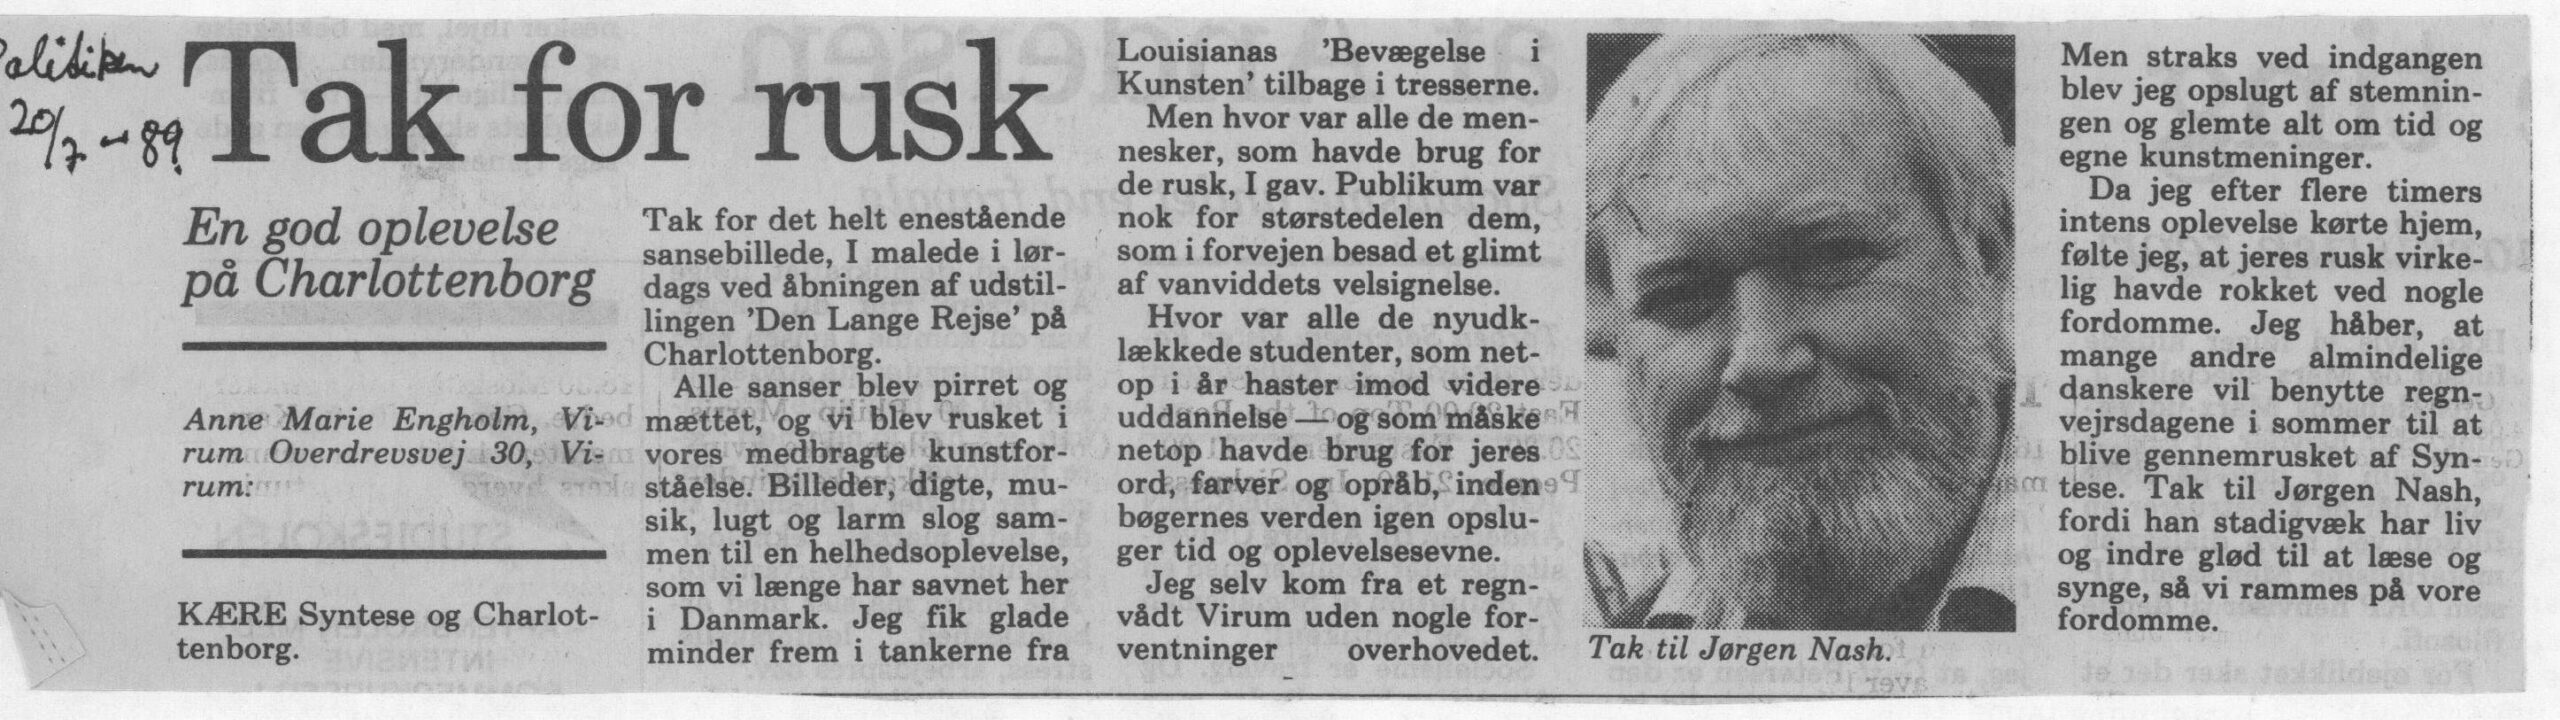 Tak for rusk. Læserbrev (Den lange rejse. Charlottenborg 1989, København). Anne Marie Engholm. Politiken.